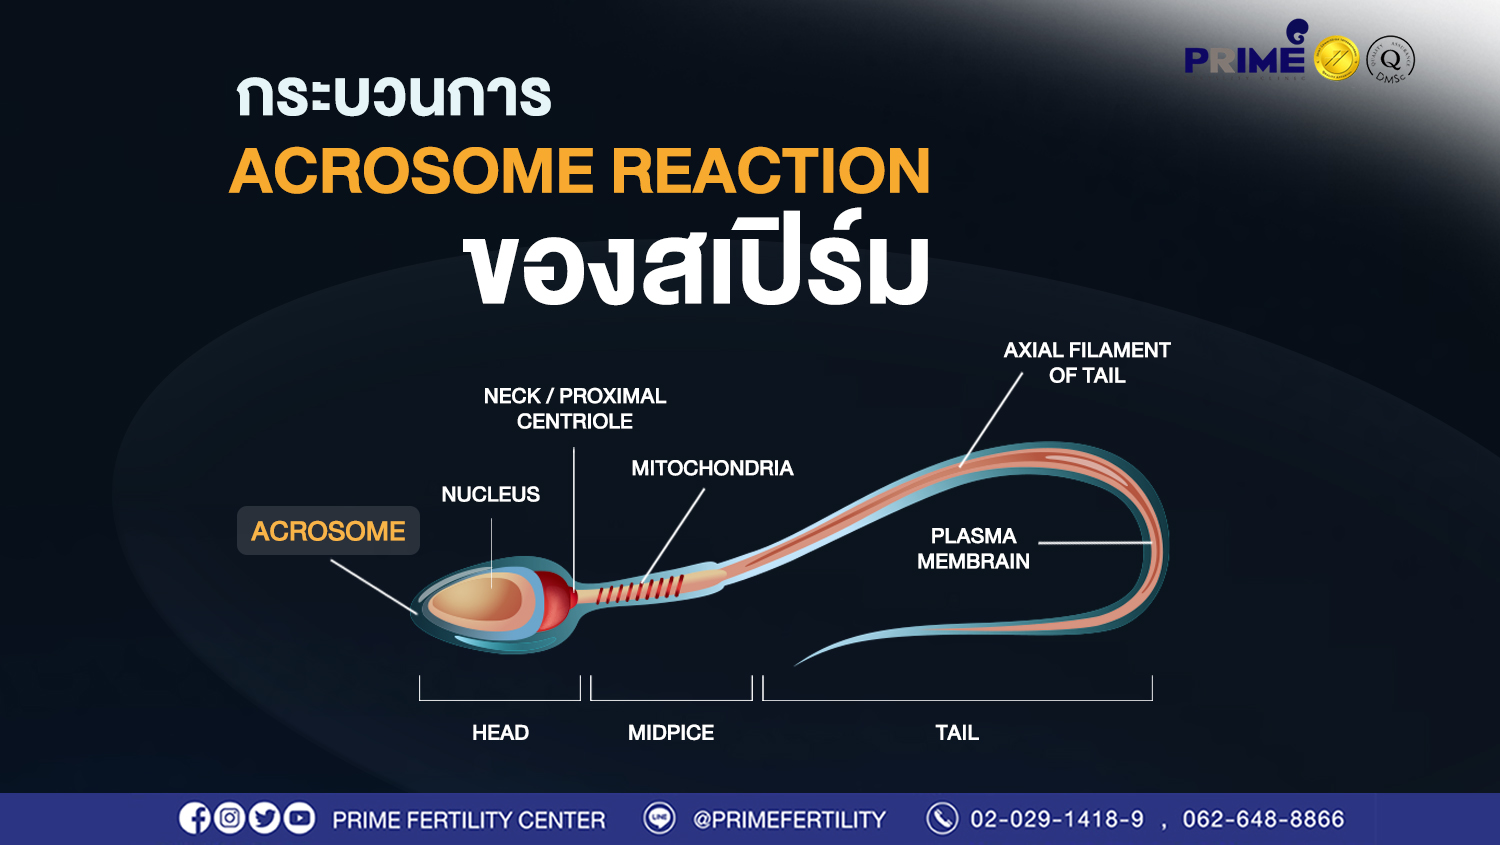 กระบวนการ Acrosome reaction ของสเปิร์ม คืออะไร?